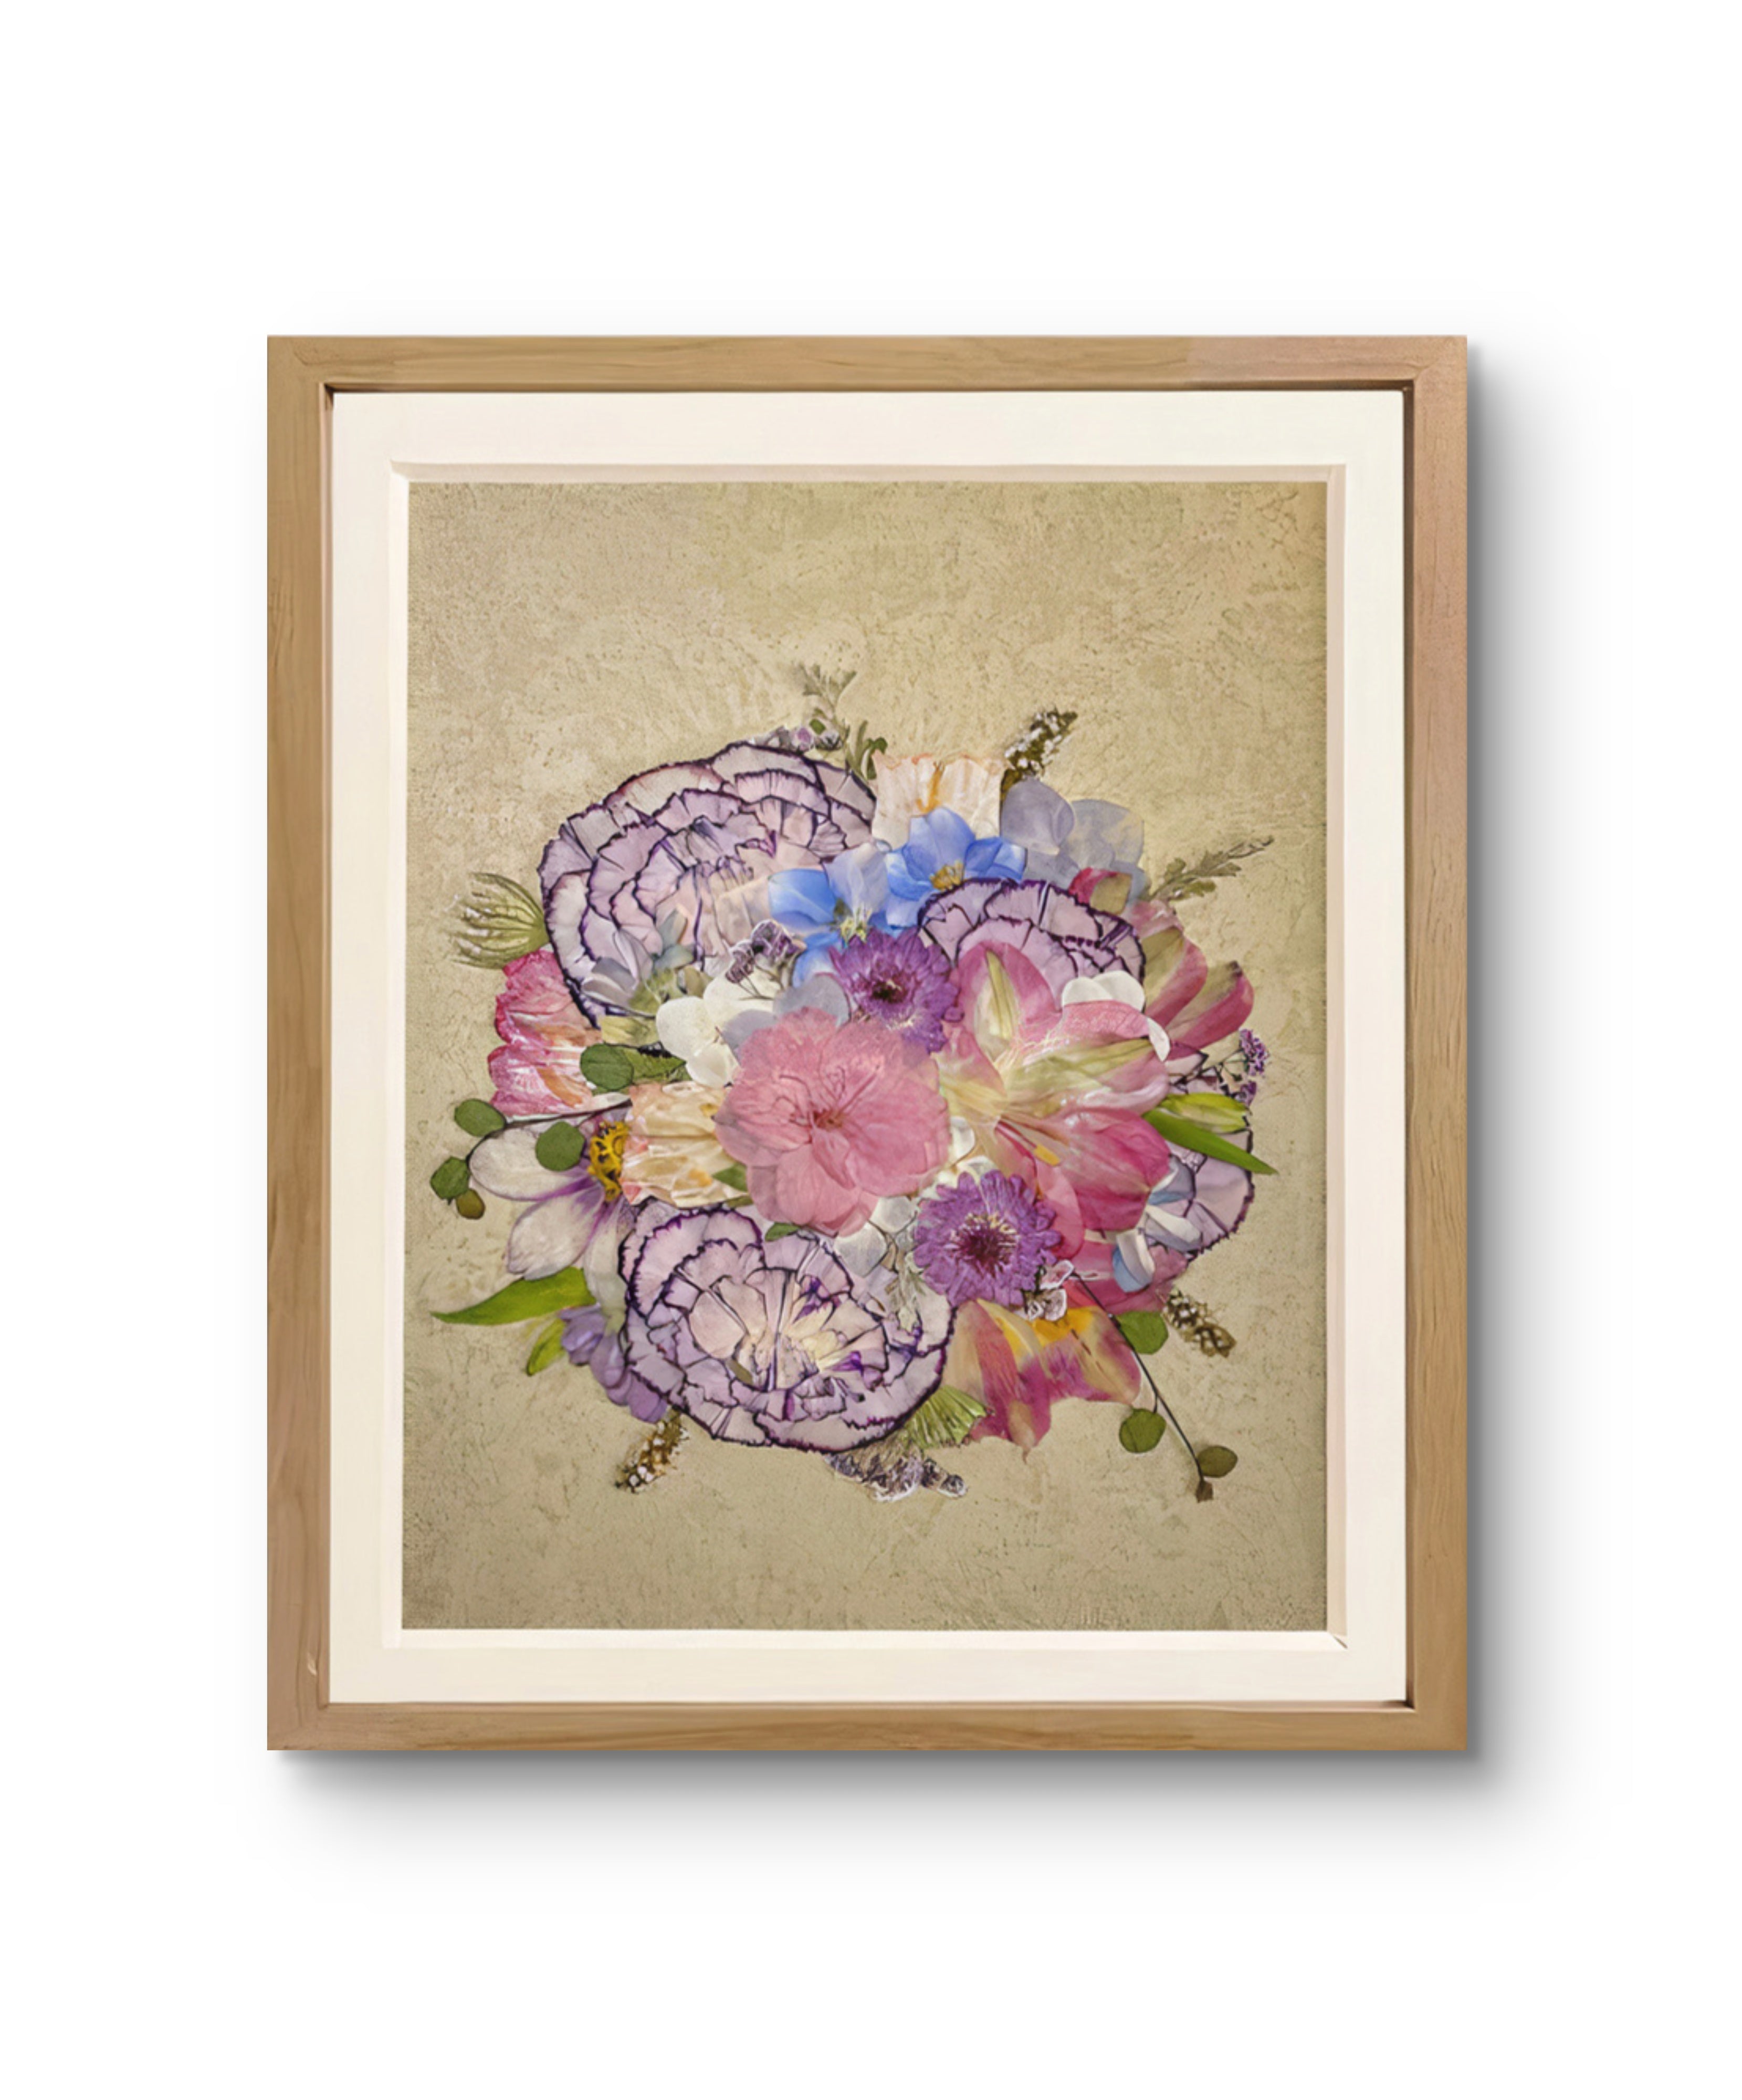 carnation petals formed pressed flower frame art